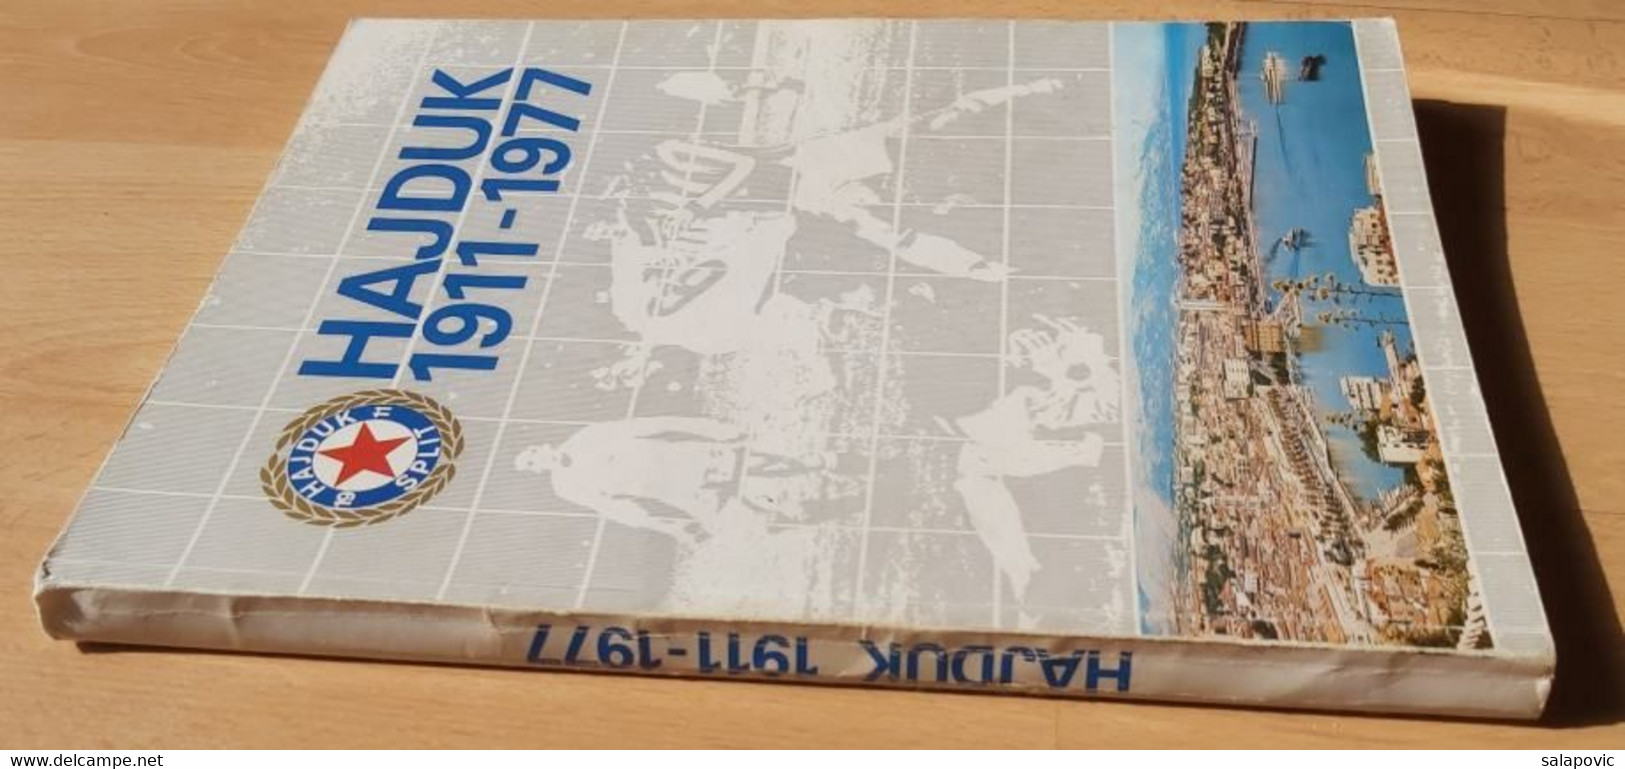 Hajduk Split 1911-1977 Srećko Eterović  Monografija Football Club Croatia, Monograph - Books